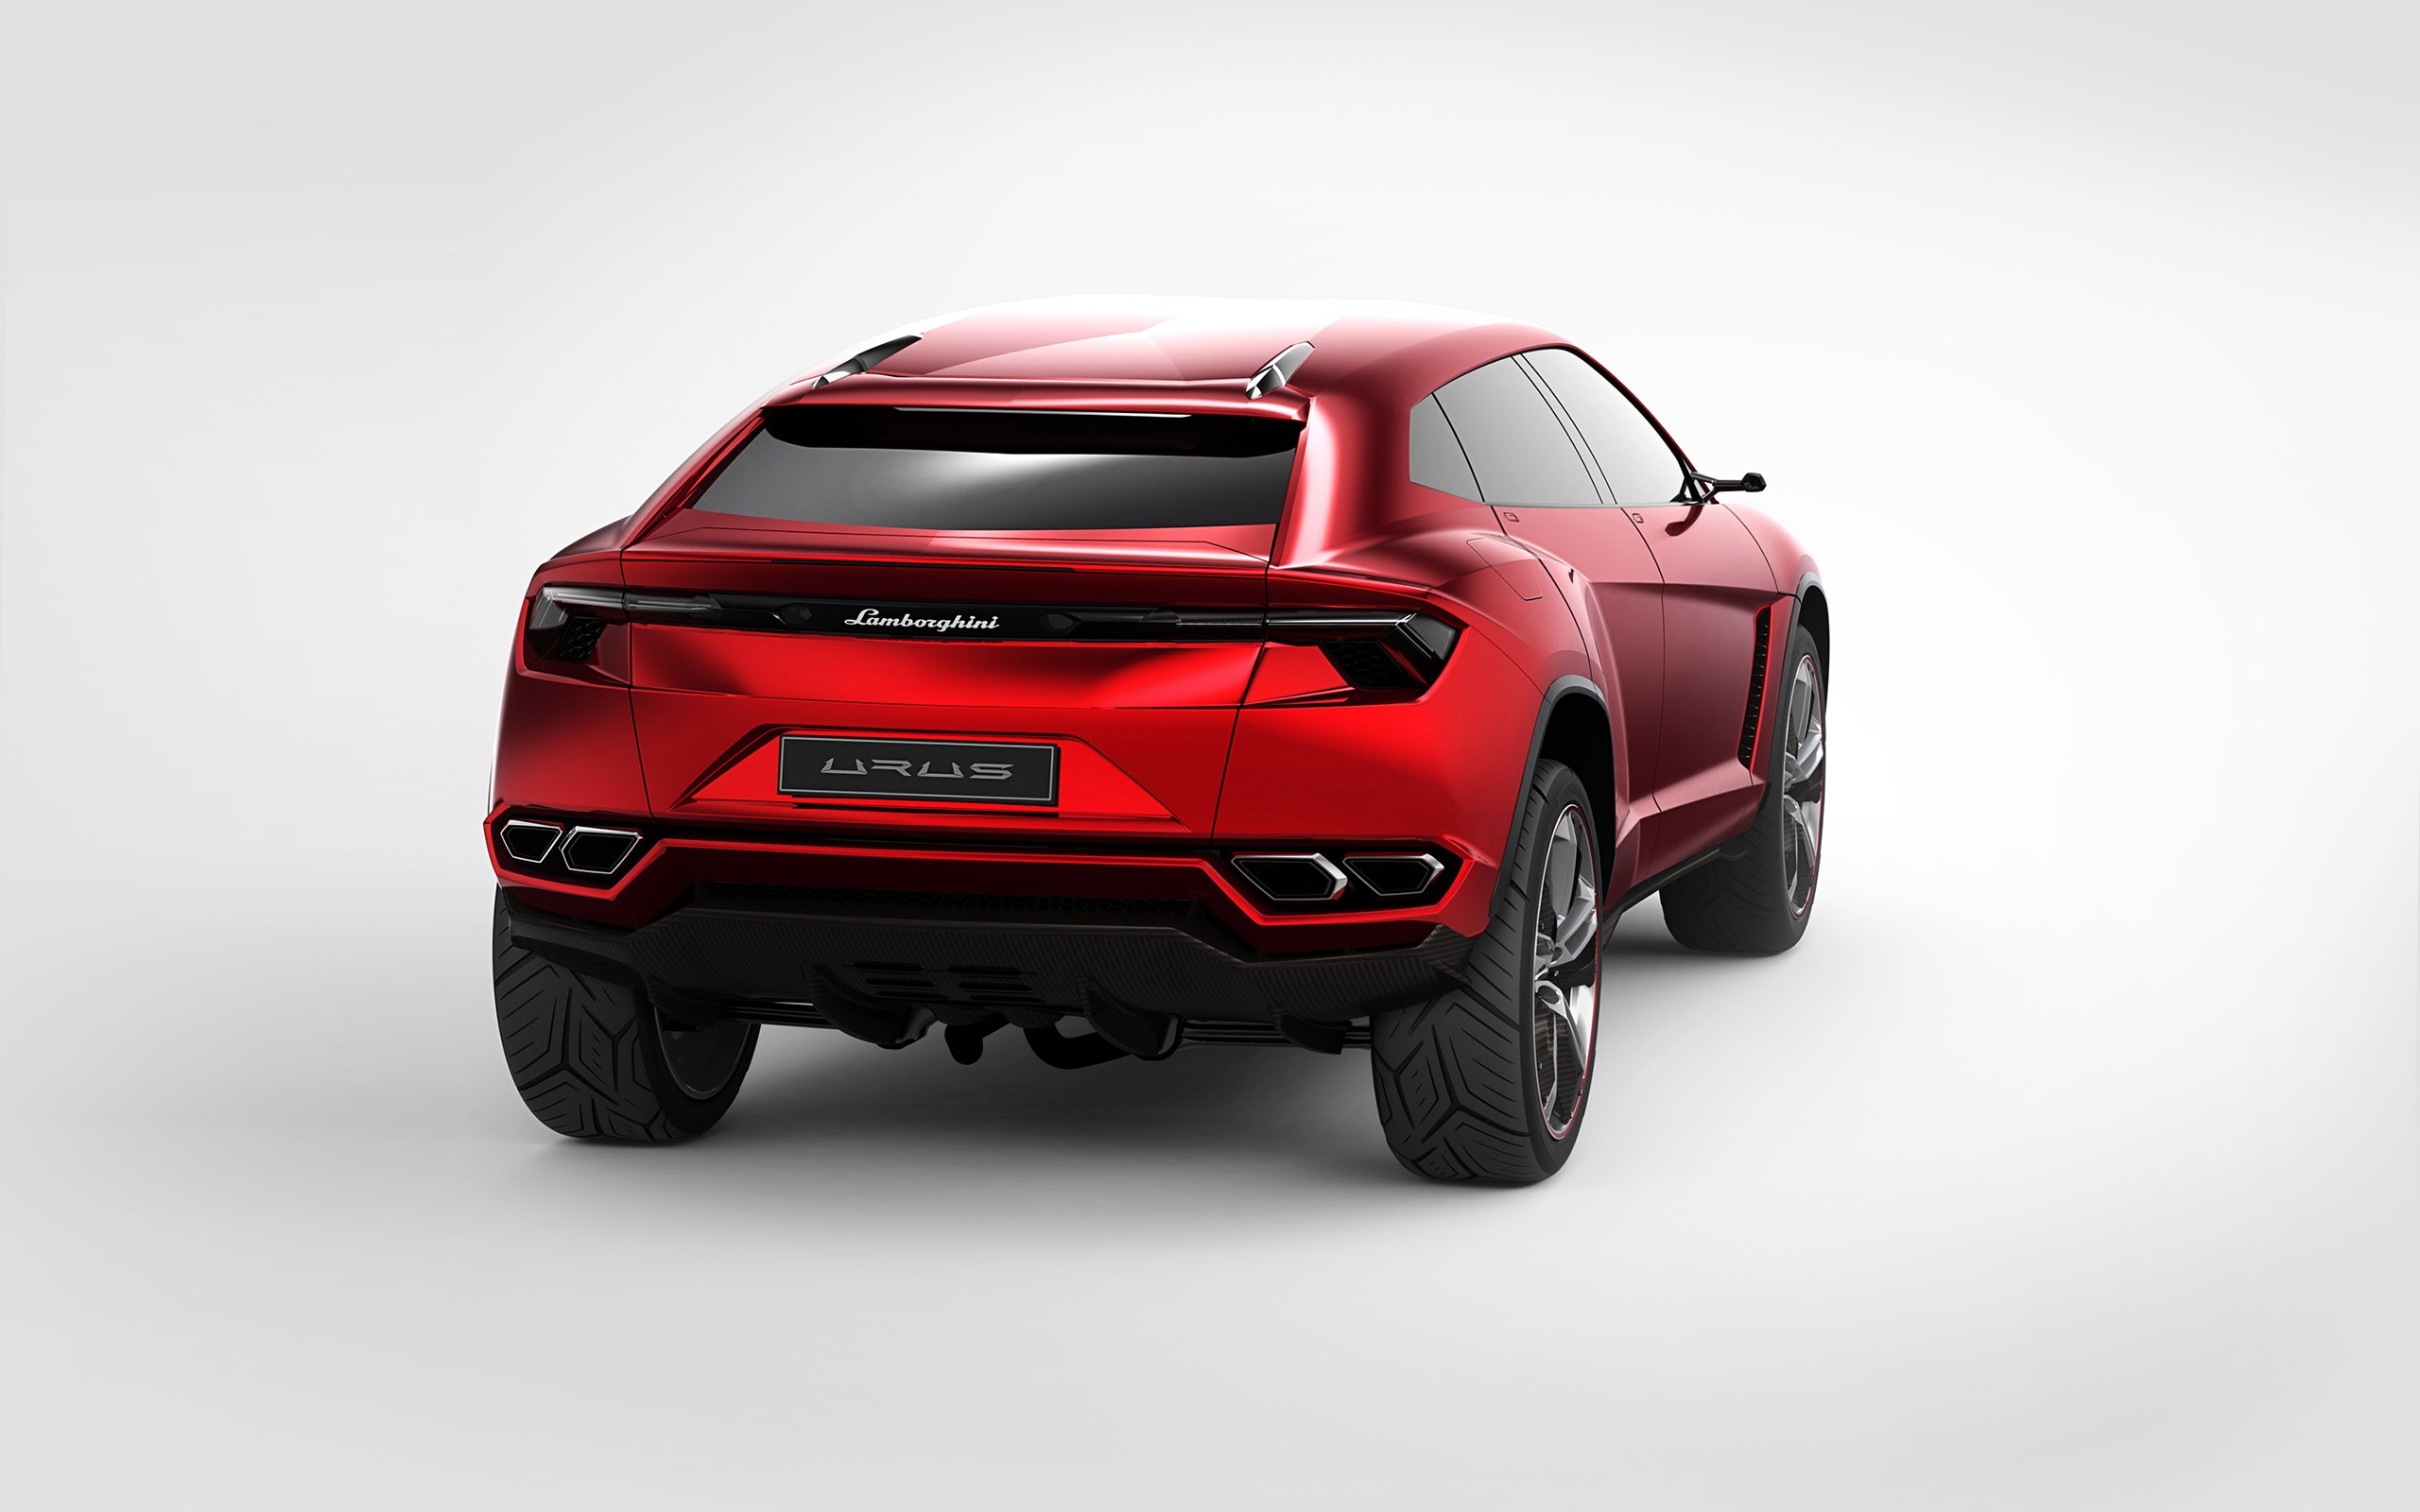 Lamborghini Urus Concept Rear Studio for 2560 x 1600 widescreen resolution